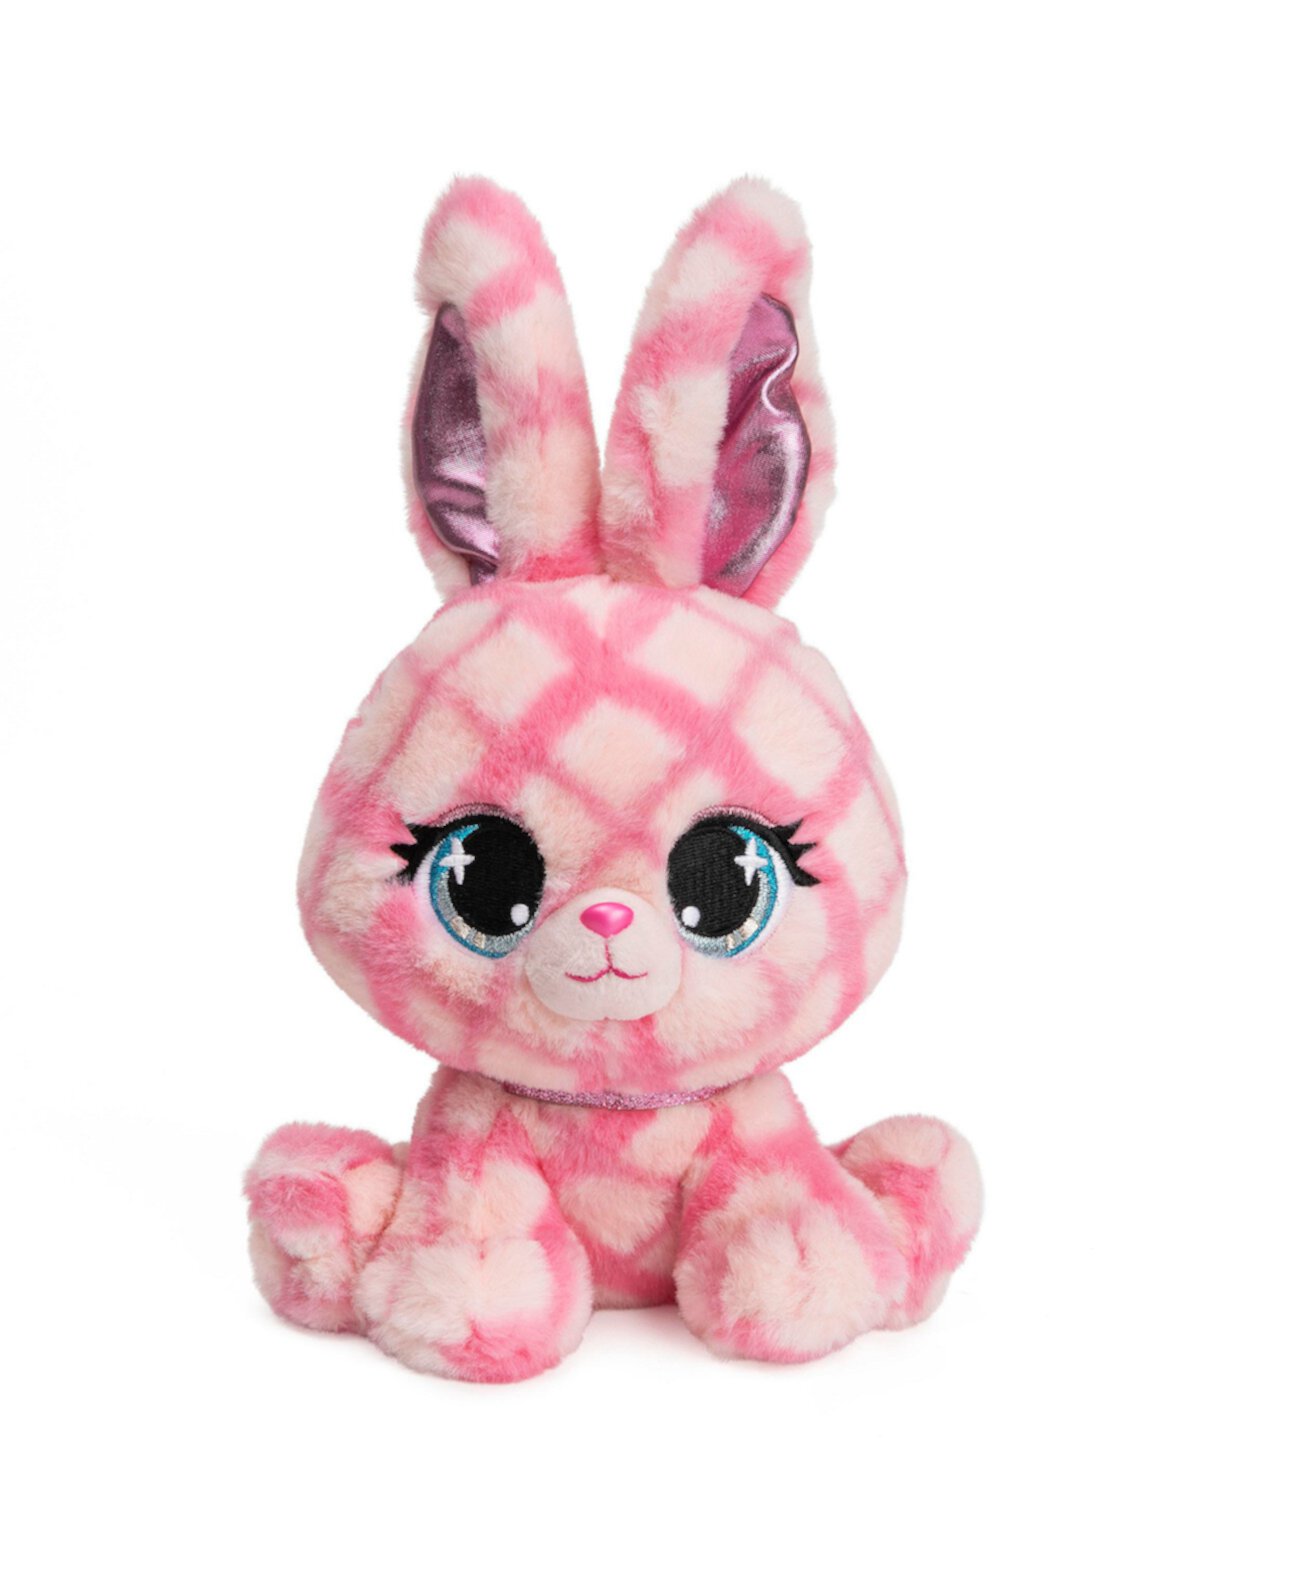 GUND P.Lashes Дизайнерская мода Pets Trixie Karrats Rabbit Premium чучело животных Стильный мягкий плюшевый кролик с блестками, для детей от 3 лет, розовый и фиолетовый, 6 дюймов GUND